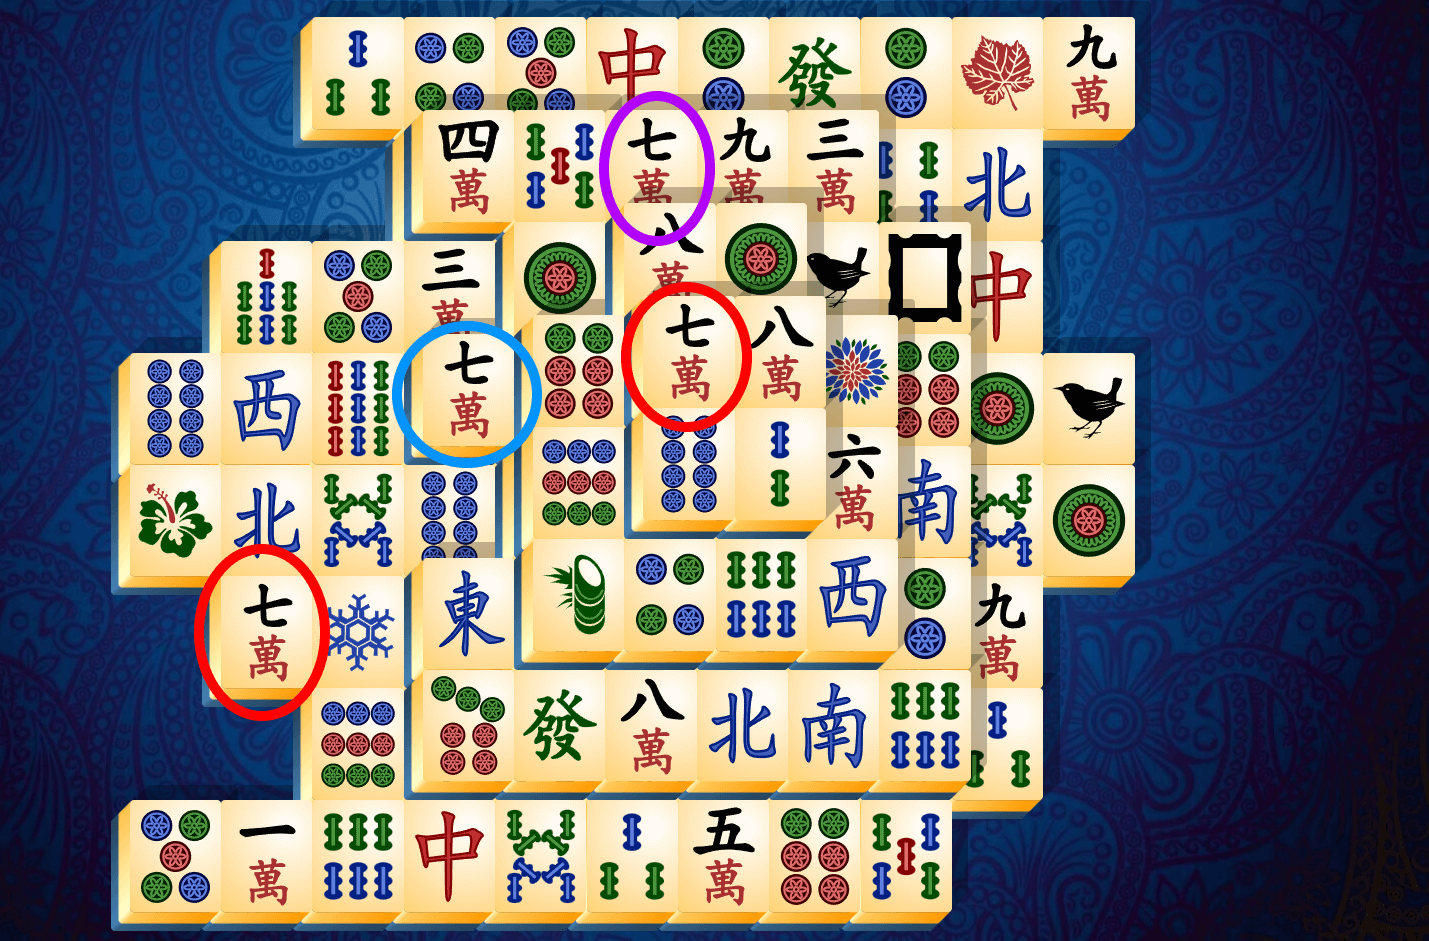 Tutorial Mahjong Solitaire, etapa 9